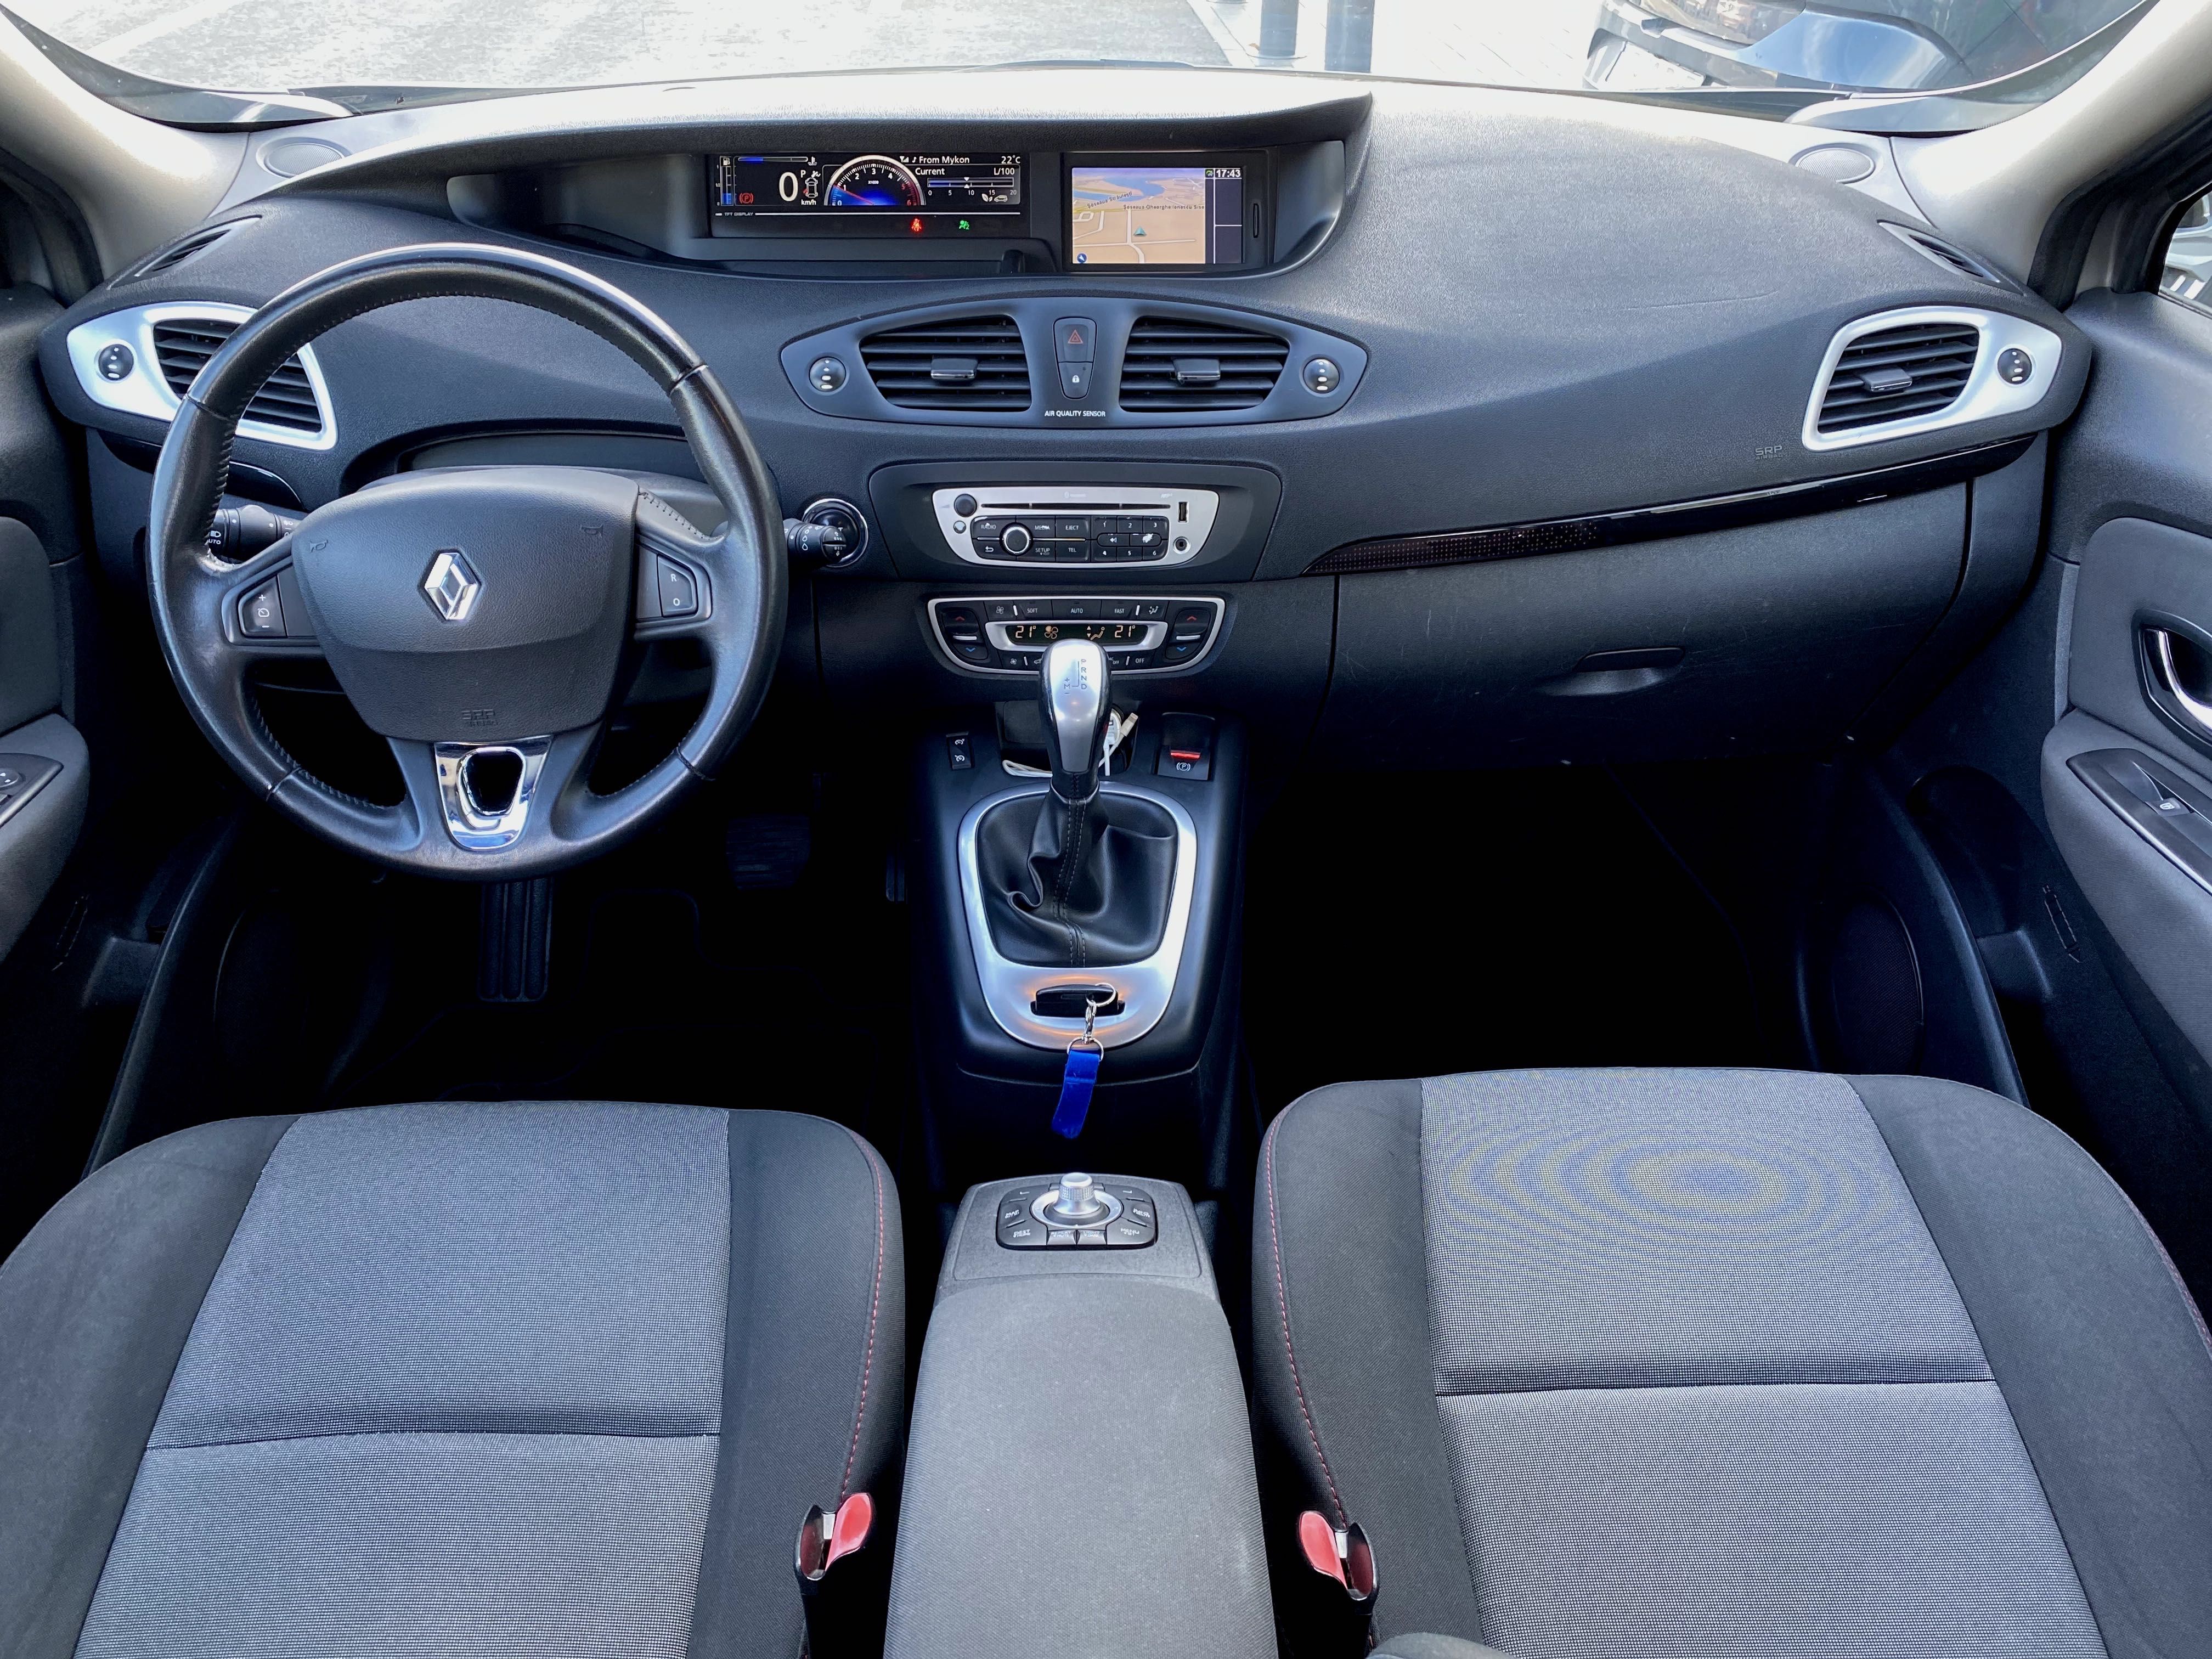 Renault Scenic 2013 1.5 dci cutie automata 7 locuri